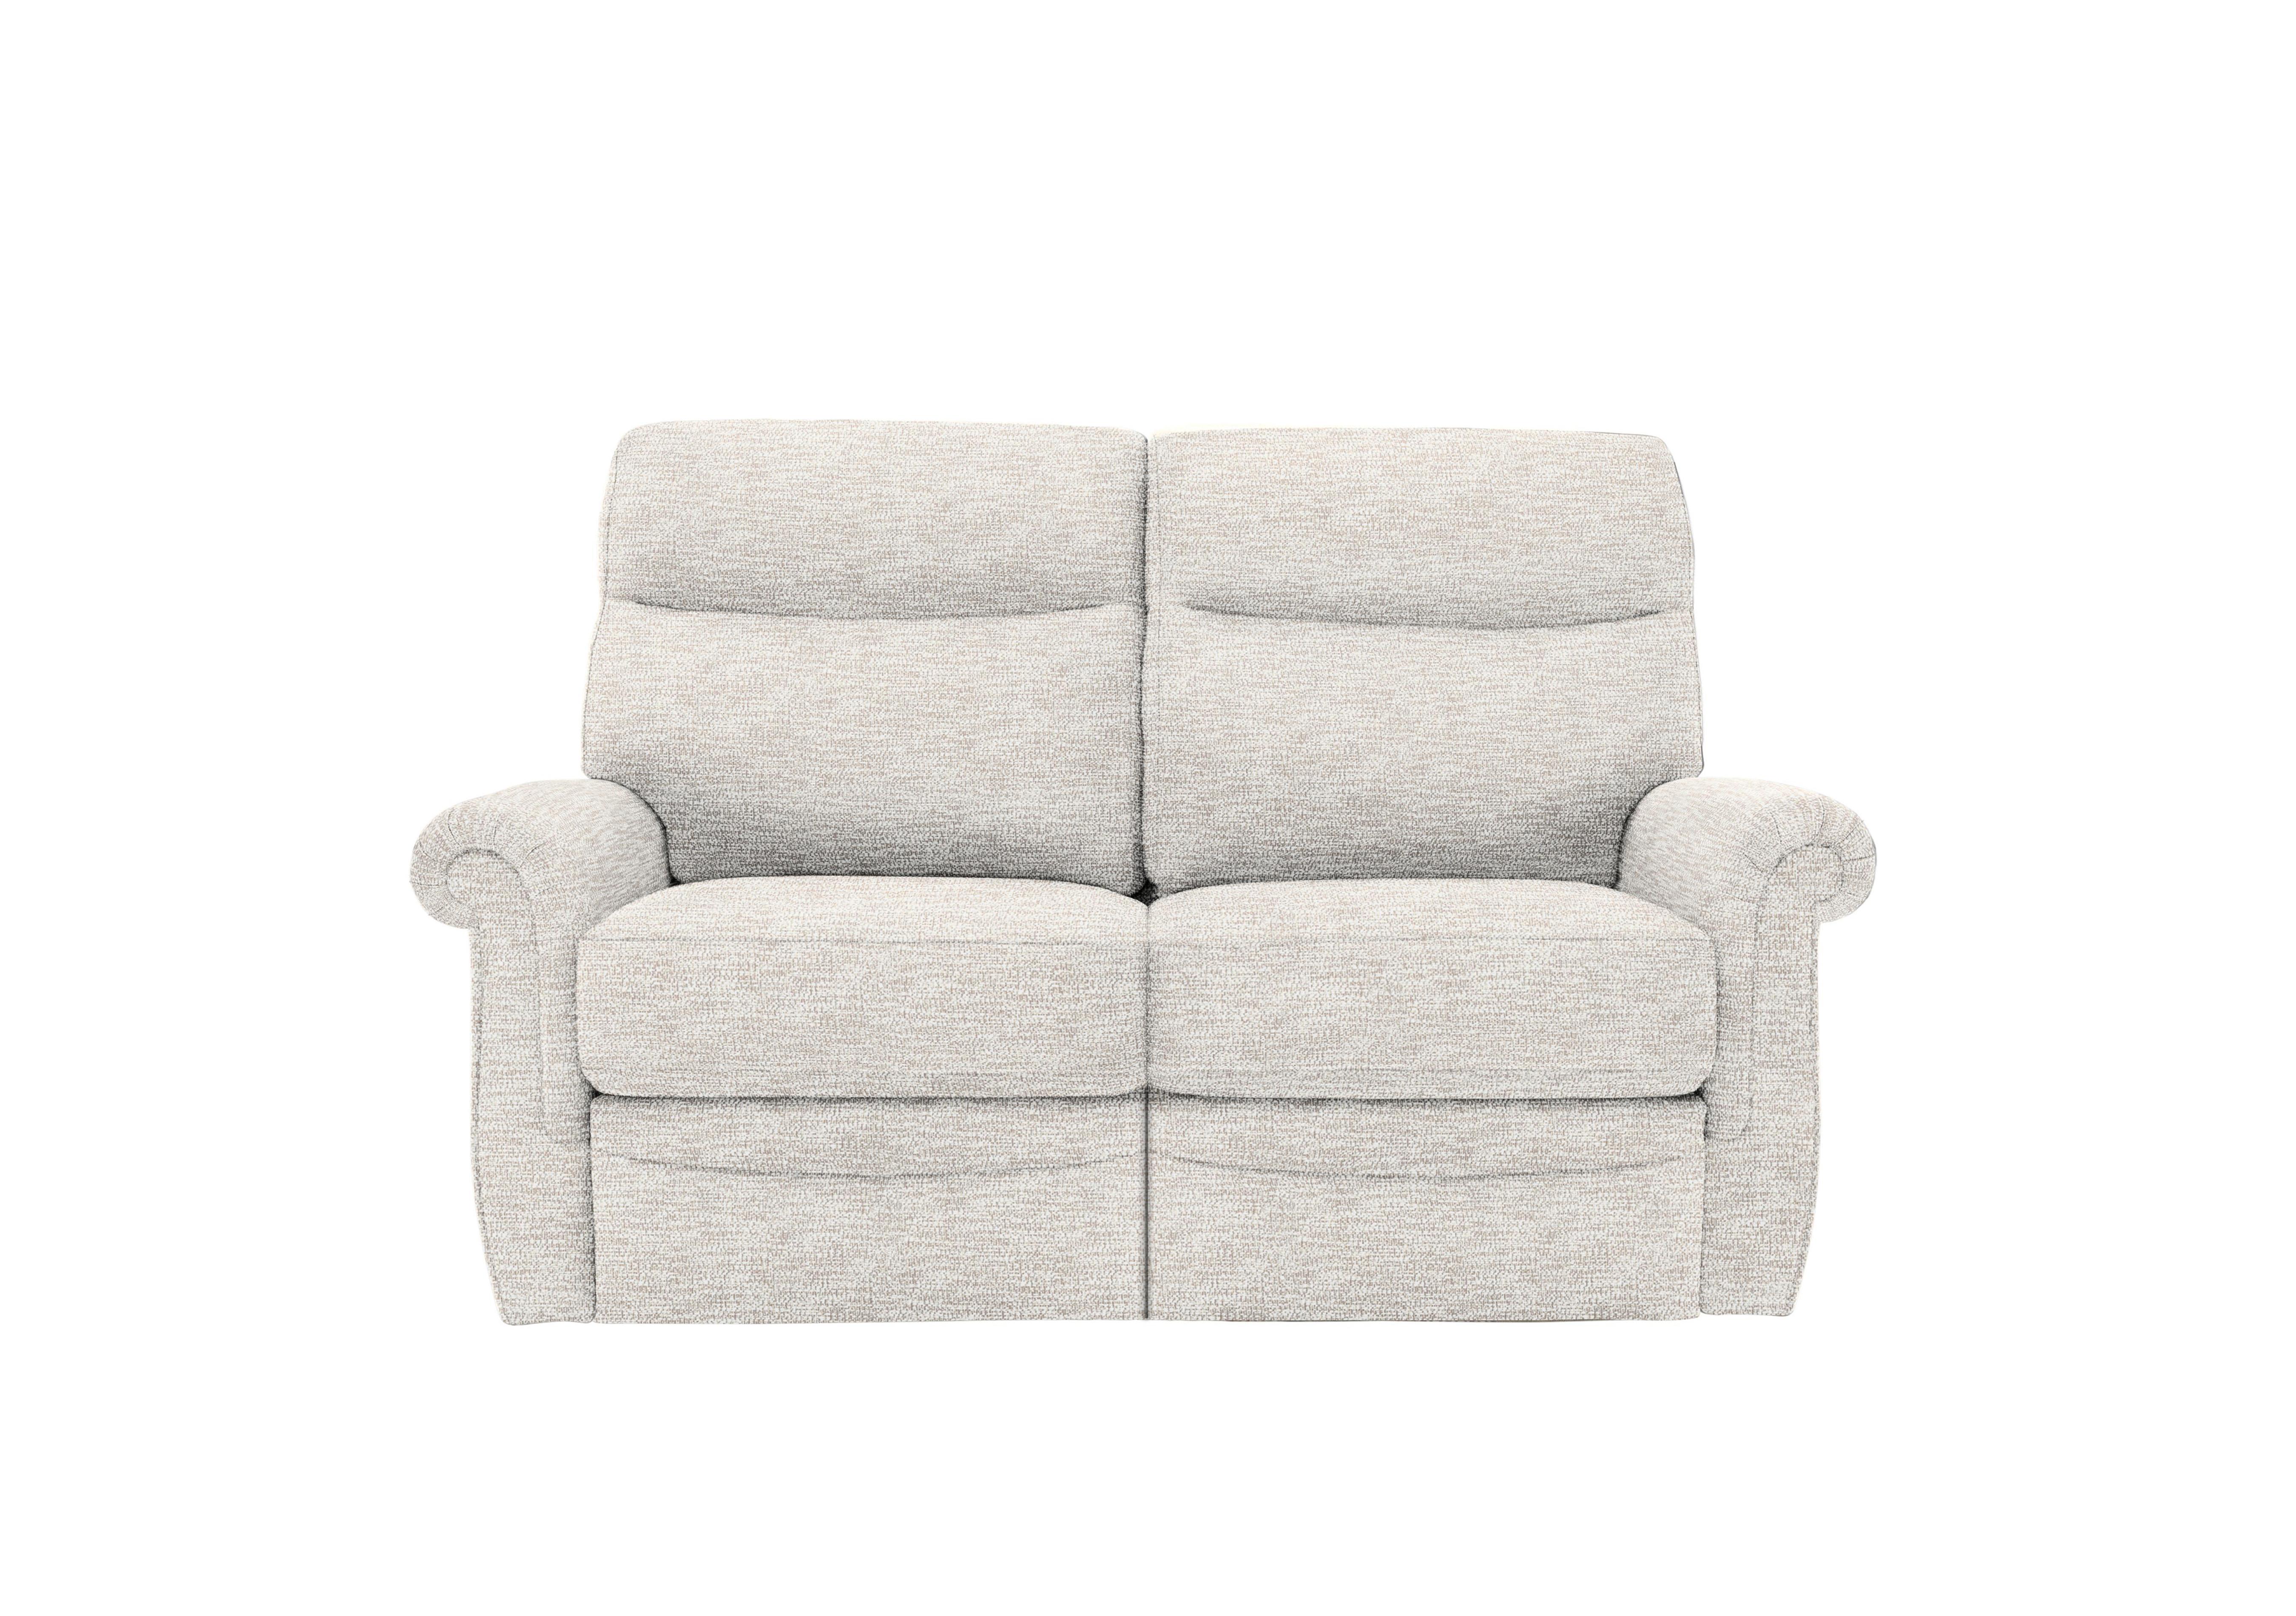 Avon 2 Seater Fabric Sofa in C931 Rush Cream on Furniture Village